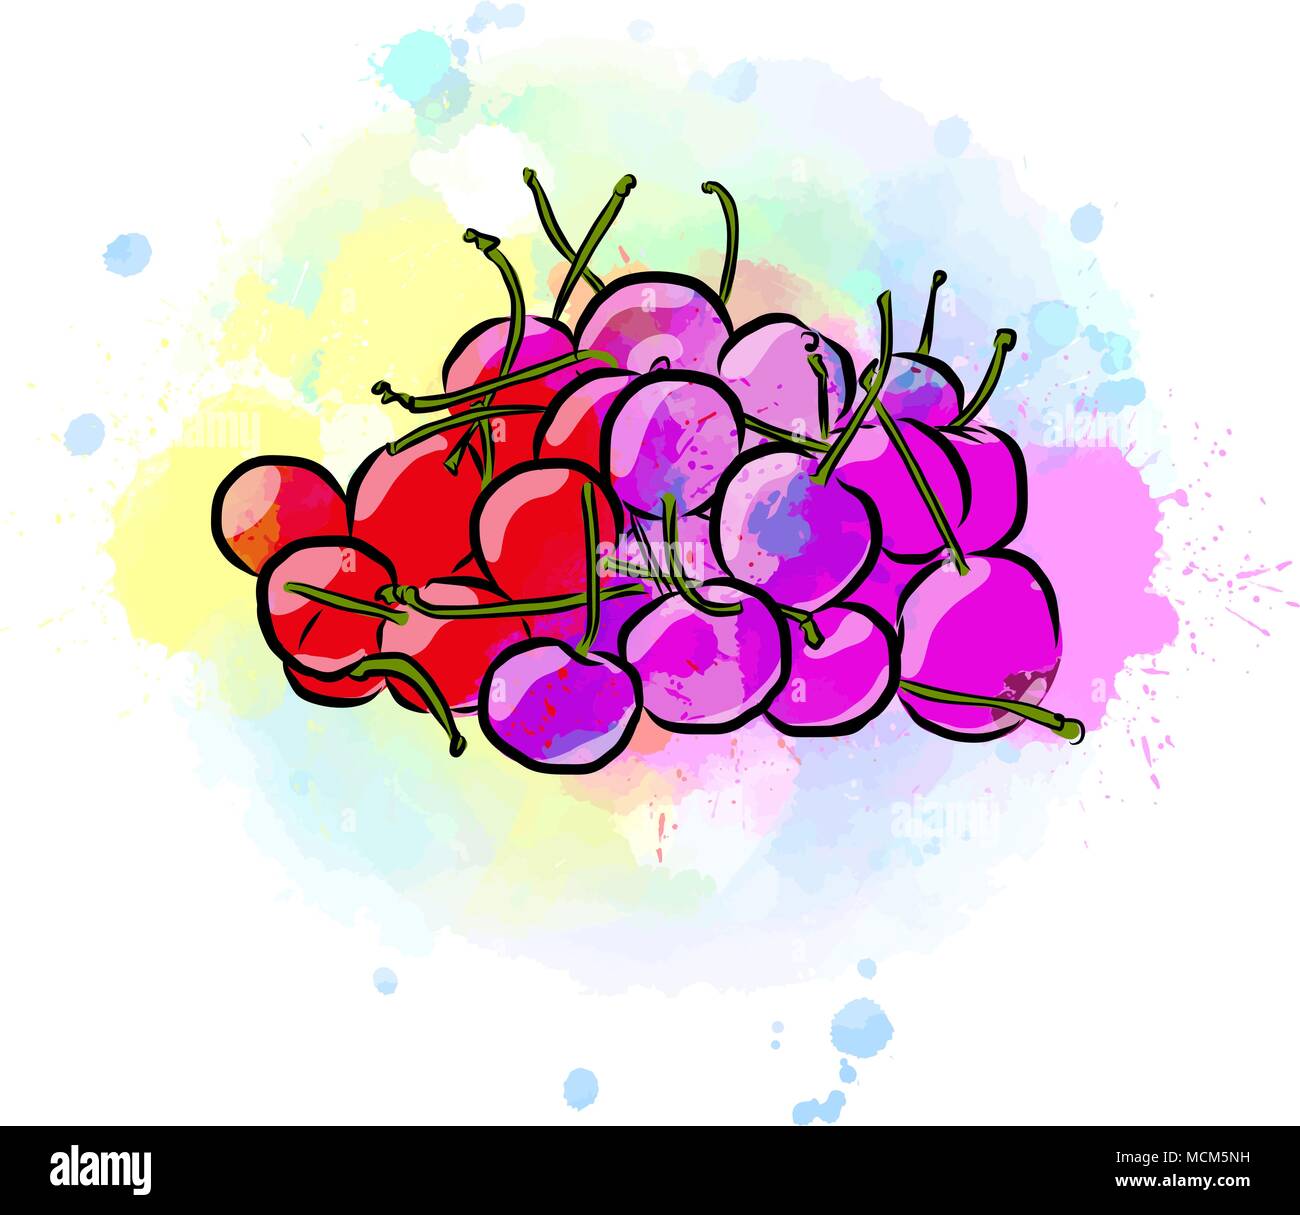 Farbige Zeichnung von Kirschen. Frisches Design mit bunten Früchten in Aquarell Stil. Moderne vector marketing Abbildung auf weißen Hintergrund. Stock Vektor